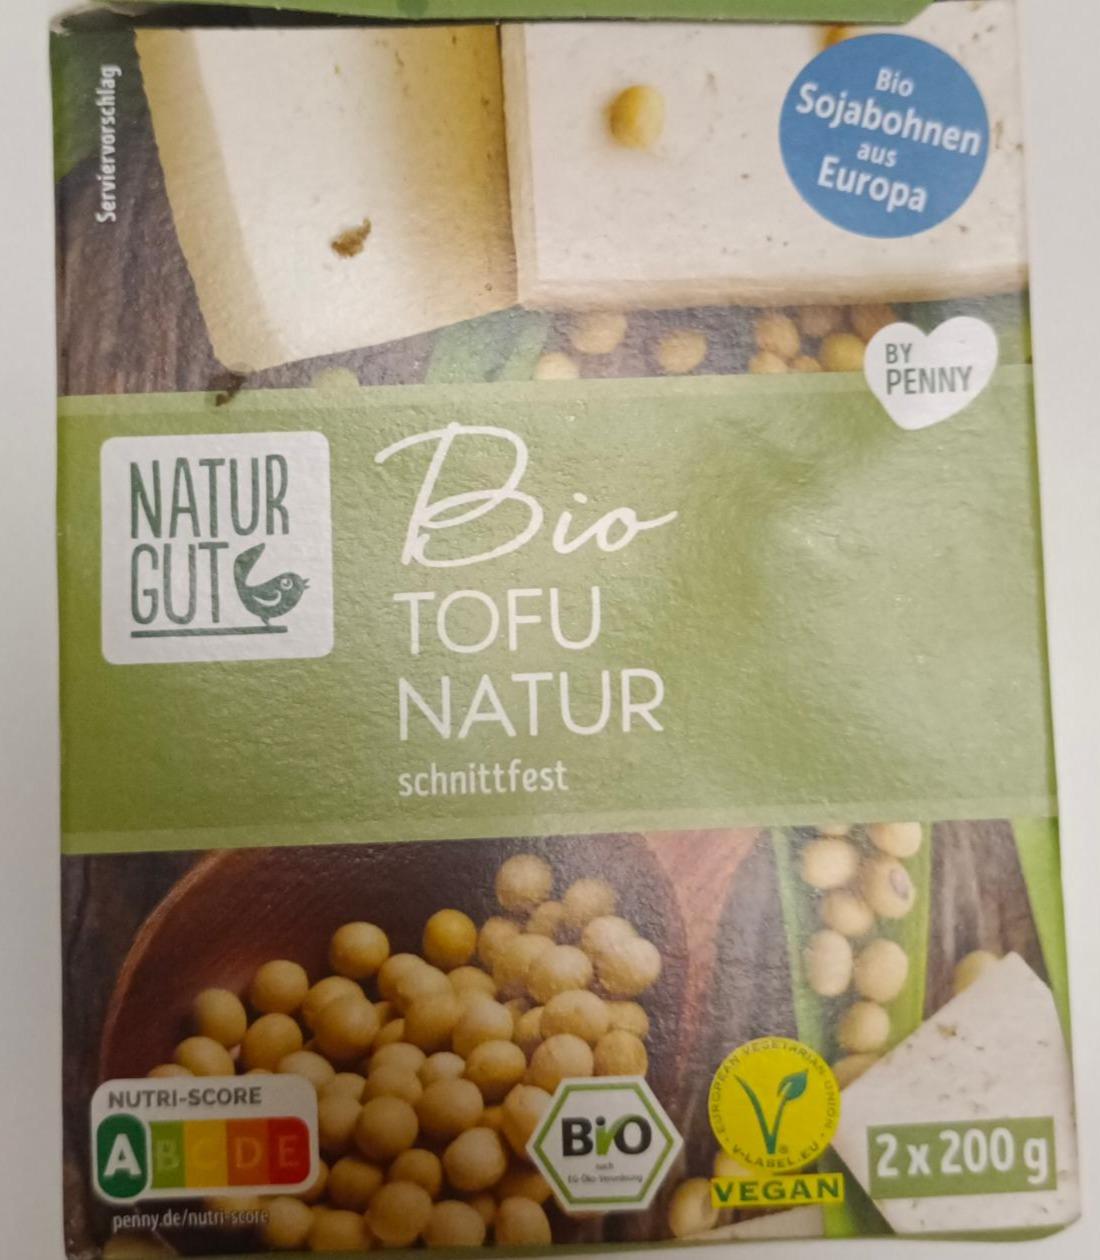 Fotografie - Bio Tofu Natur schnittfest Natur Gut